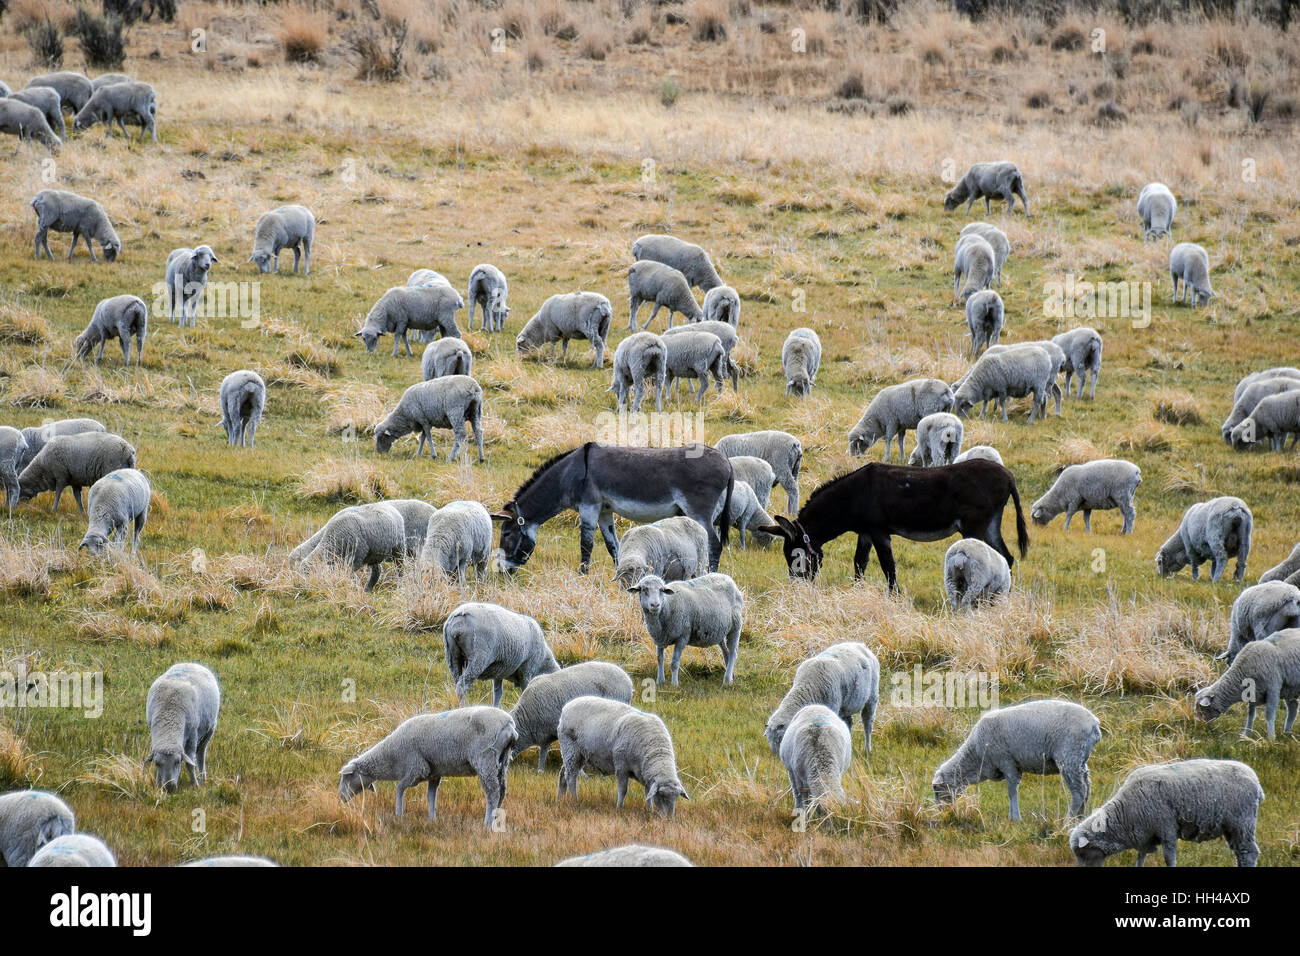 Rebaño de ovejas pastando con burros como guardianes del ganado en contra de los coyotes, lobos y otros depredadores. Foto de stock